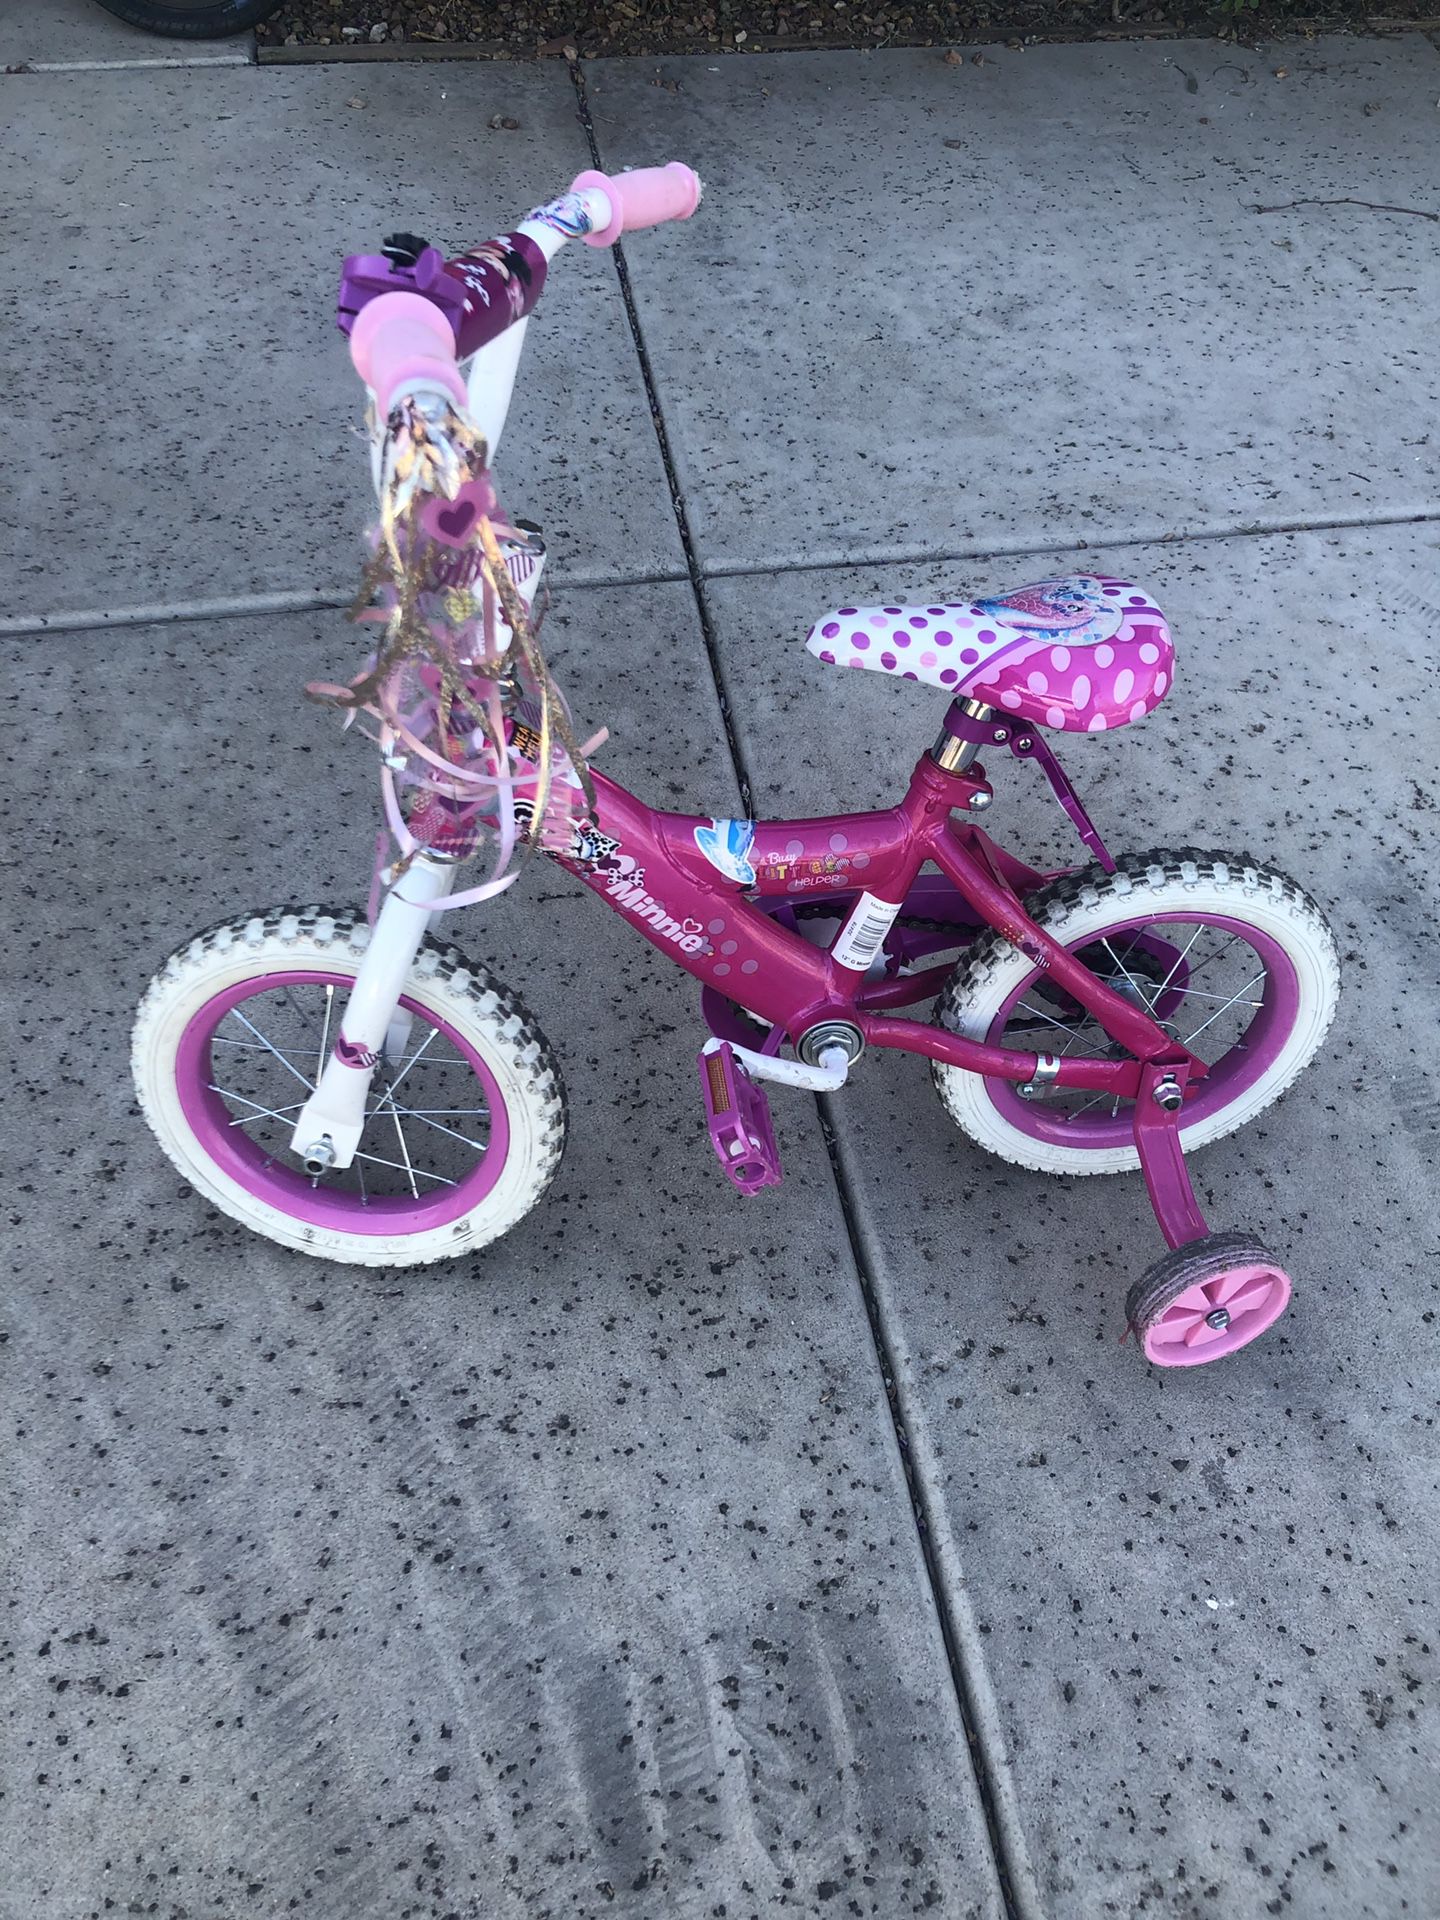 Lalaloopsy, and Minnie bikes